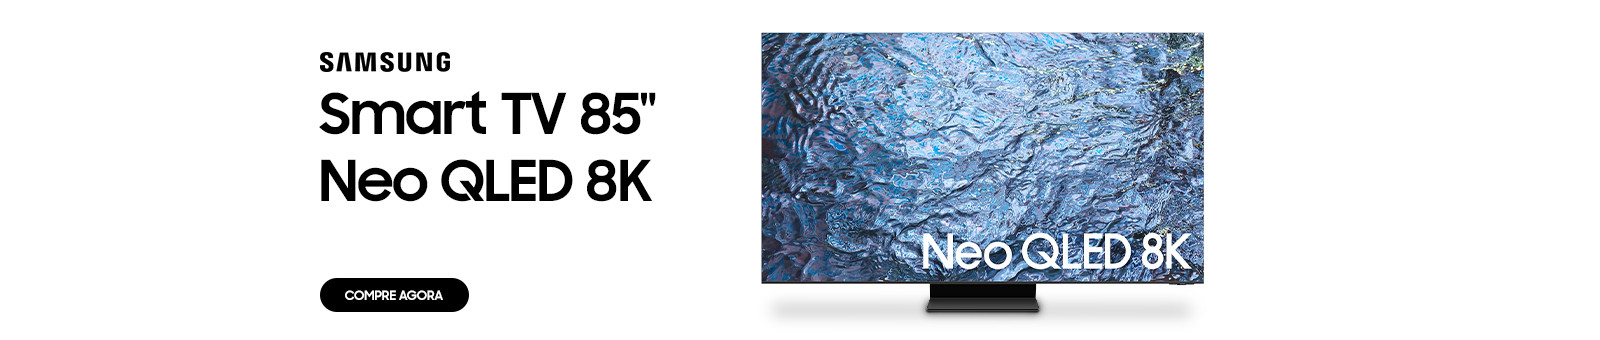 Samsung. Smart TV 85" Neo Qled 8K. Compre agora.